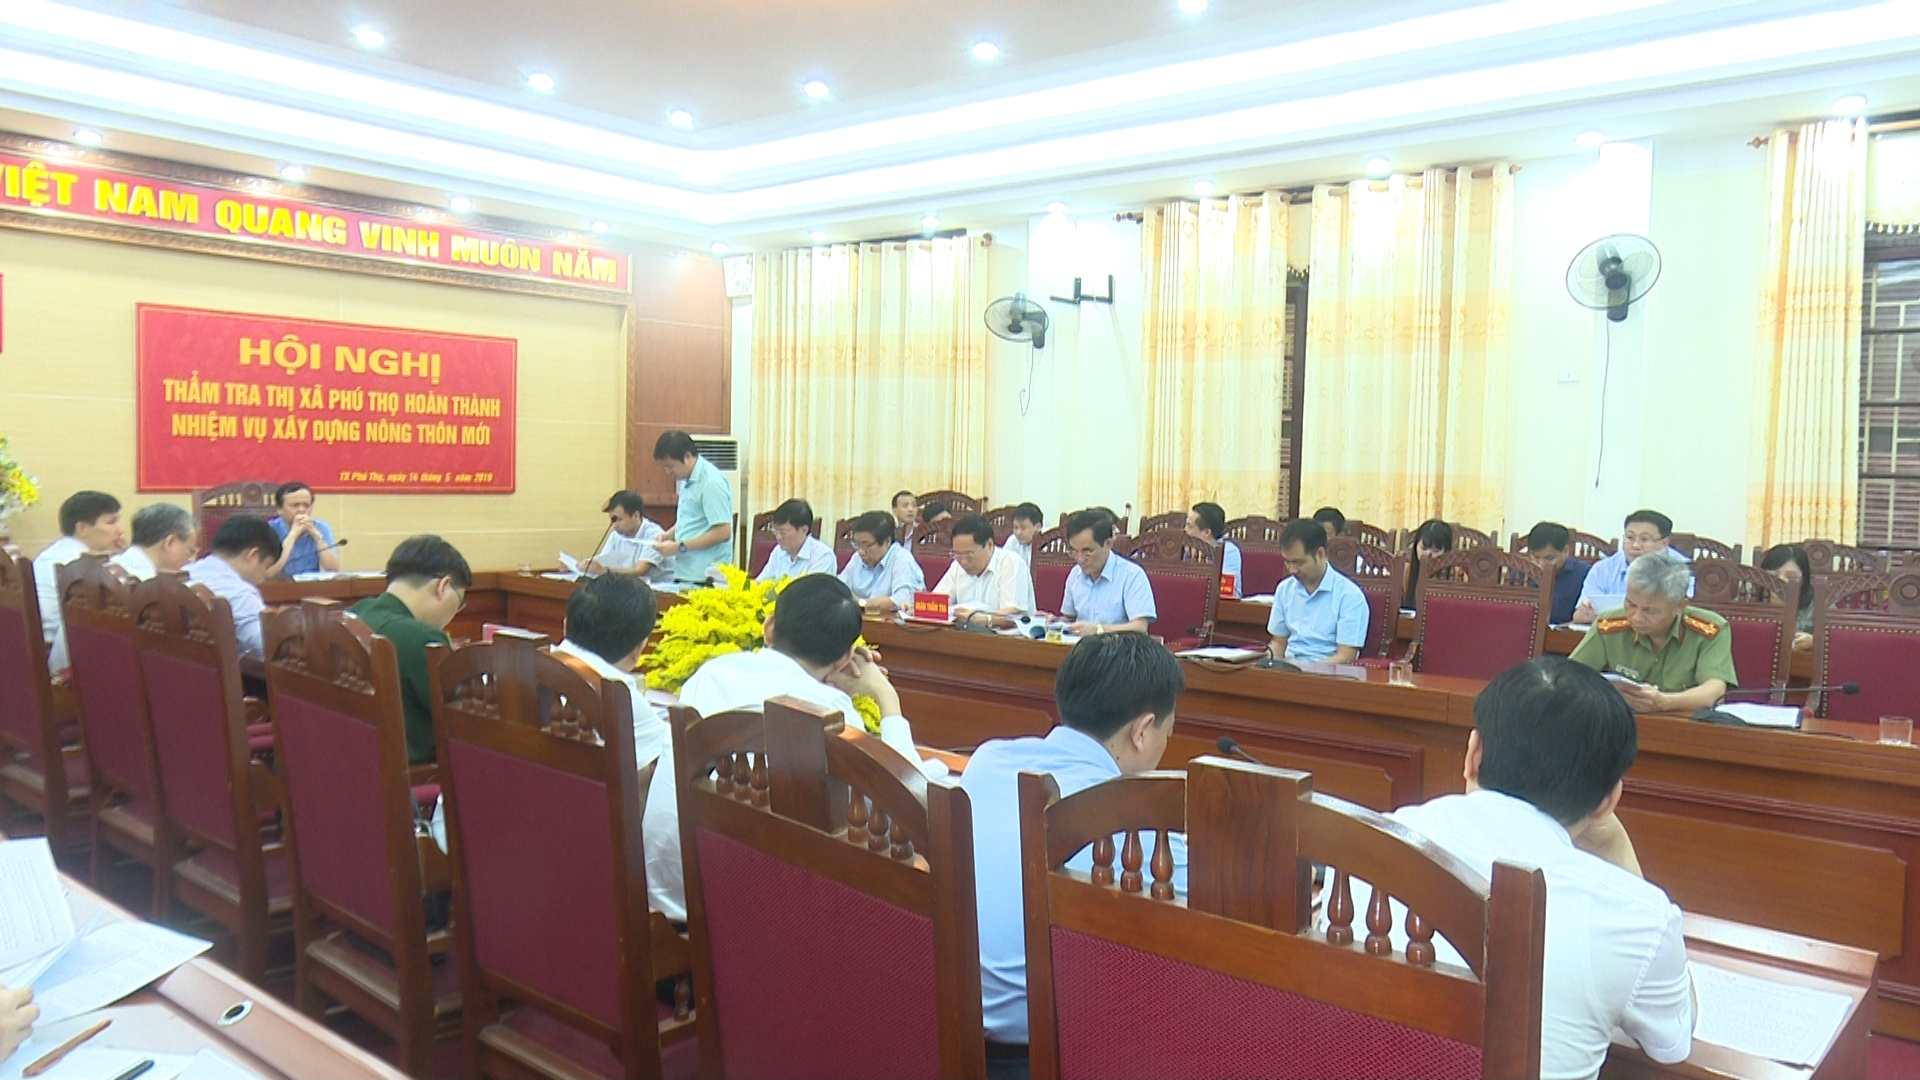 Hội nghị thẩm tra Thị xã Phú Thọ hoàn thành xây dựng NTM